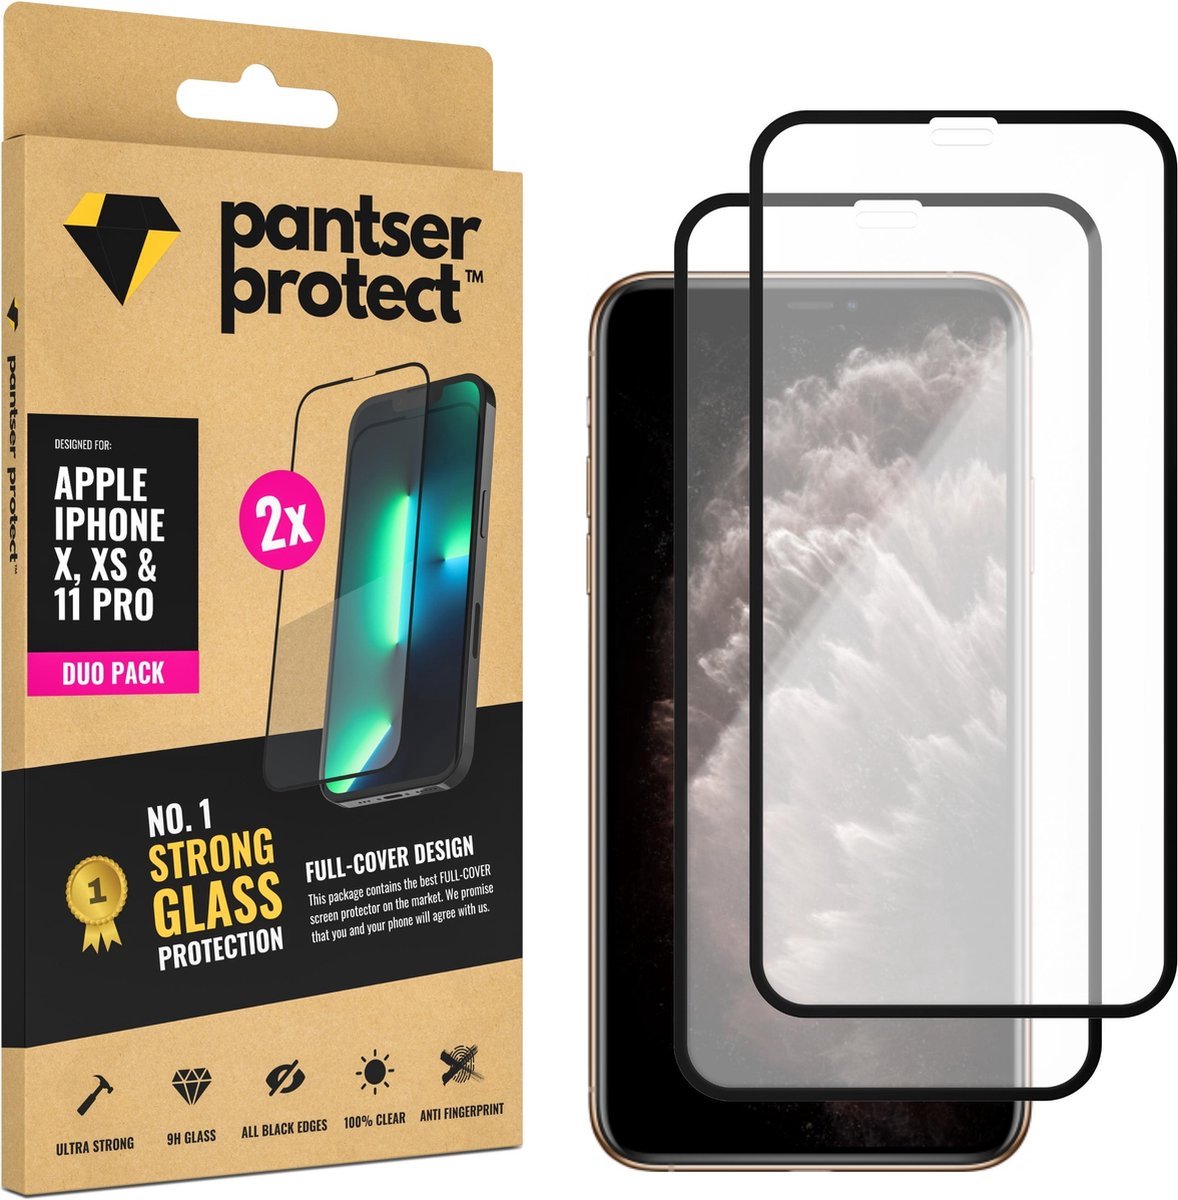 DUO-PACK - 2x Pantser Protect™ Glass Screenprotector Geschikt voor iPhone X / Xs / 11 Pro - Case Friendly - Premium Pantserglas - Glazen Screen Protector